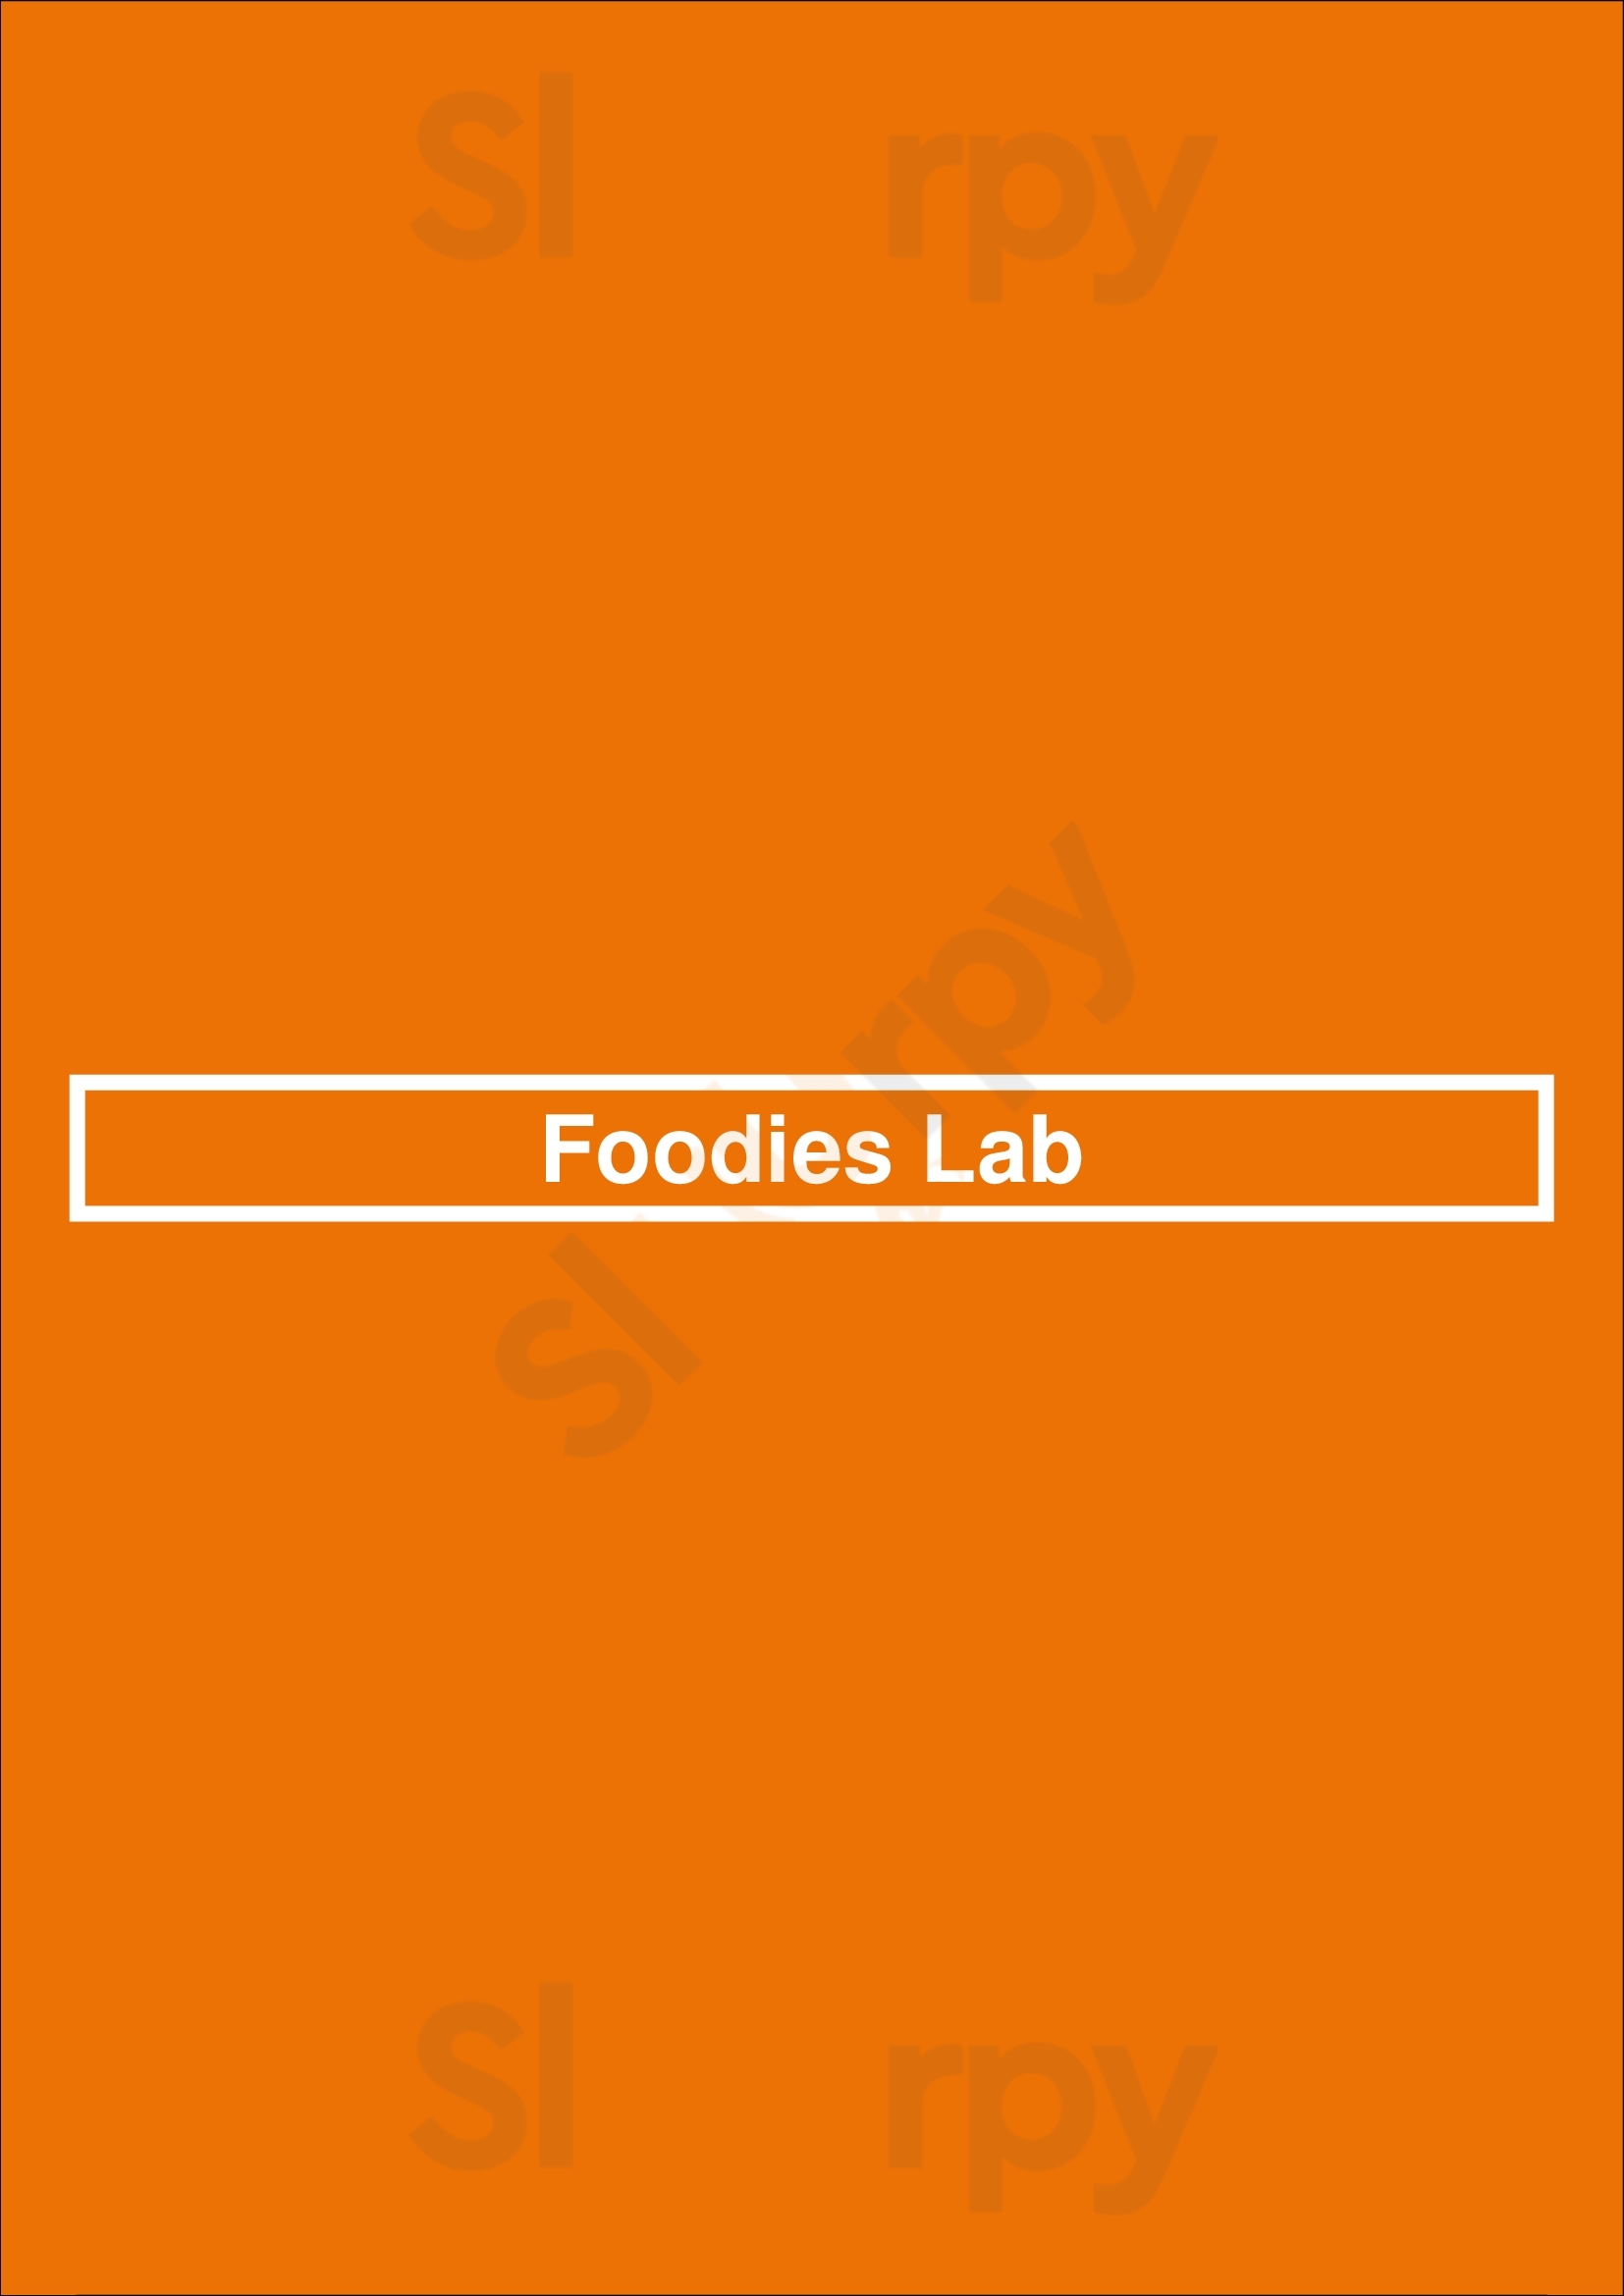 Foodies Lab Den Haag Menu - 1